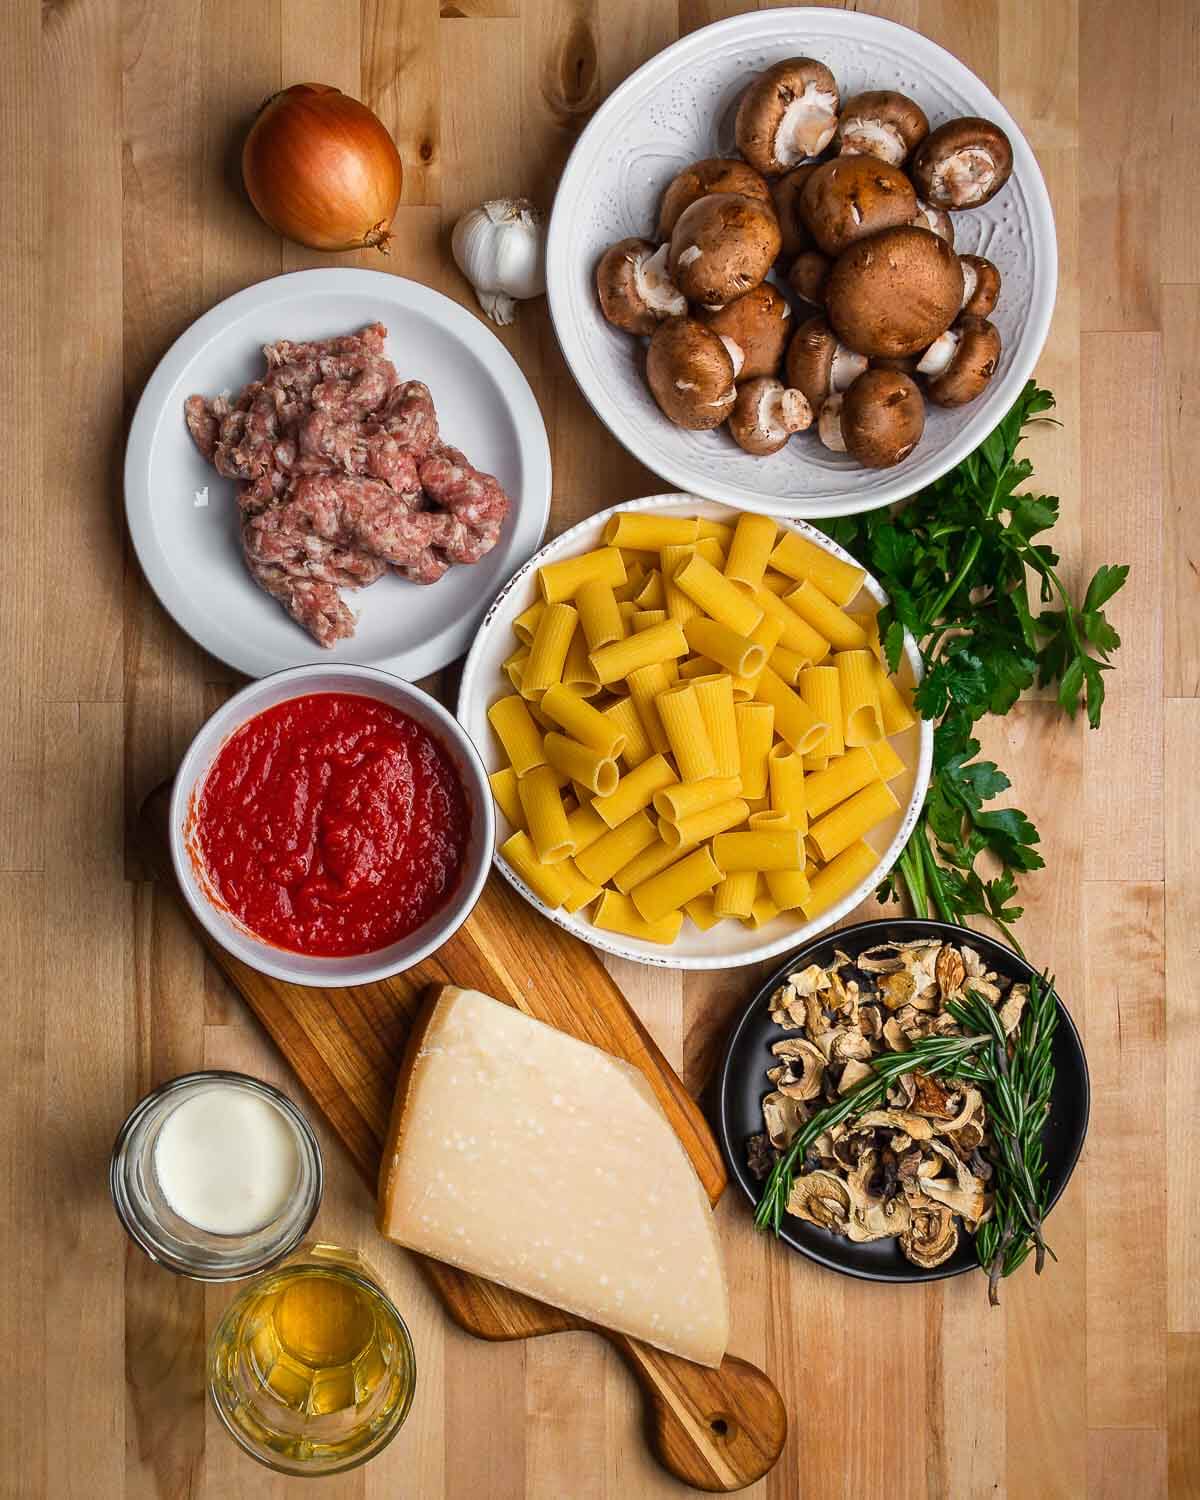 Ingredients shown: onion, garlic, mushrooms, rigatoni, parsley, plum tomatoes, rosemary, cream, white wine, and Parmigiano Reggiano.